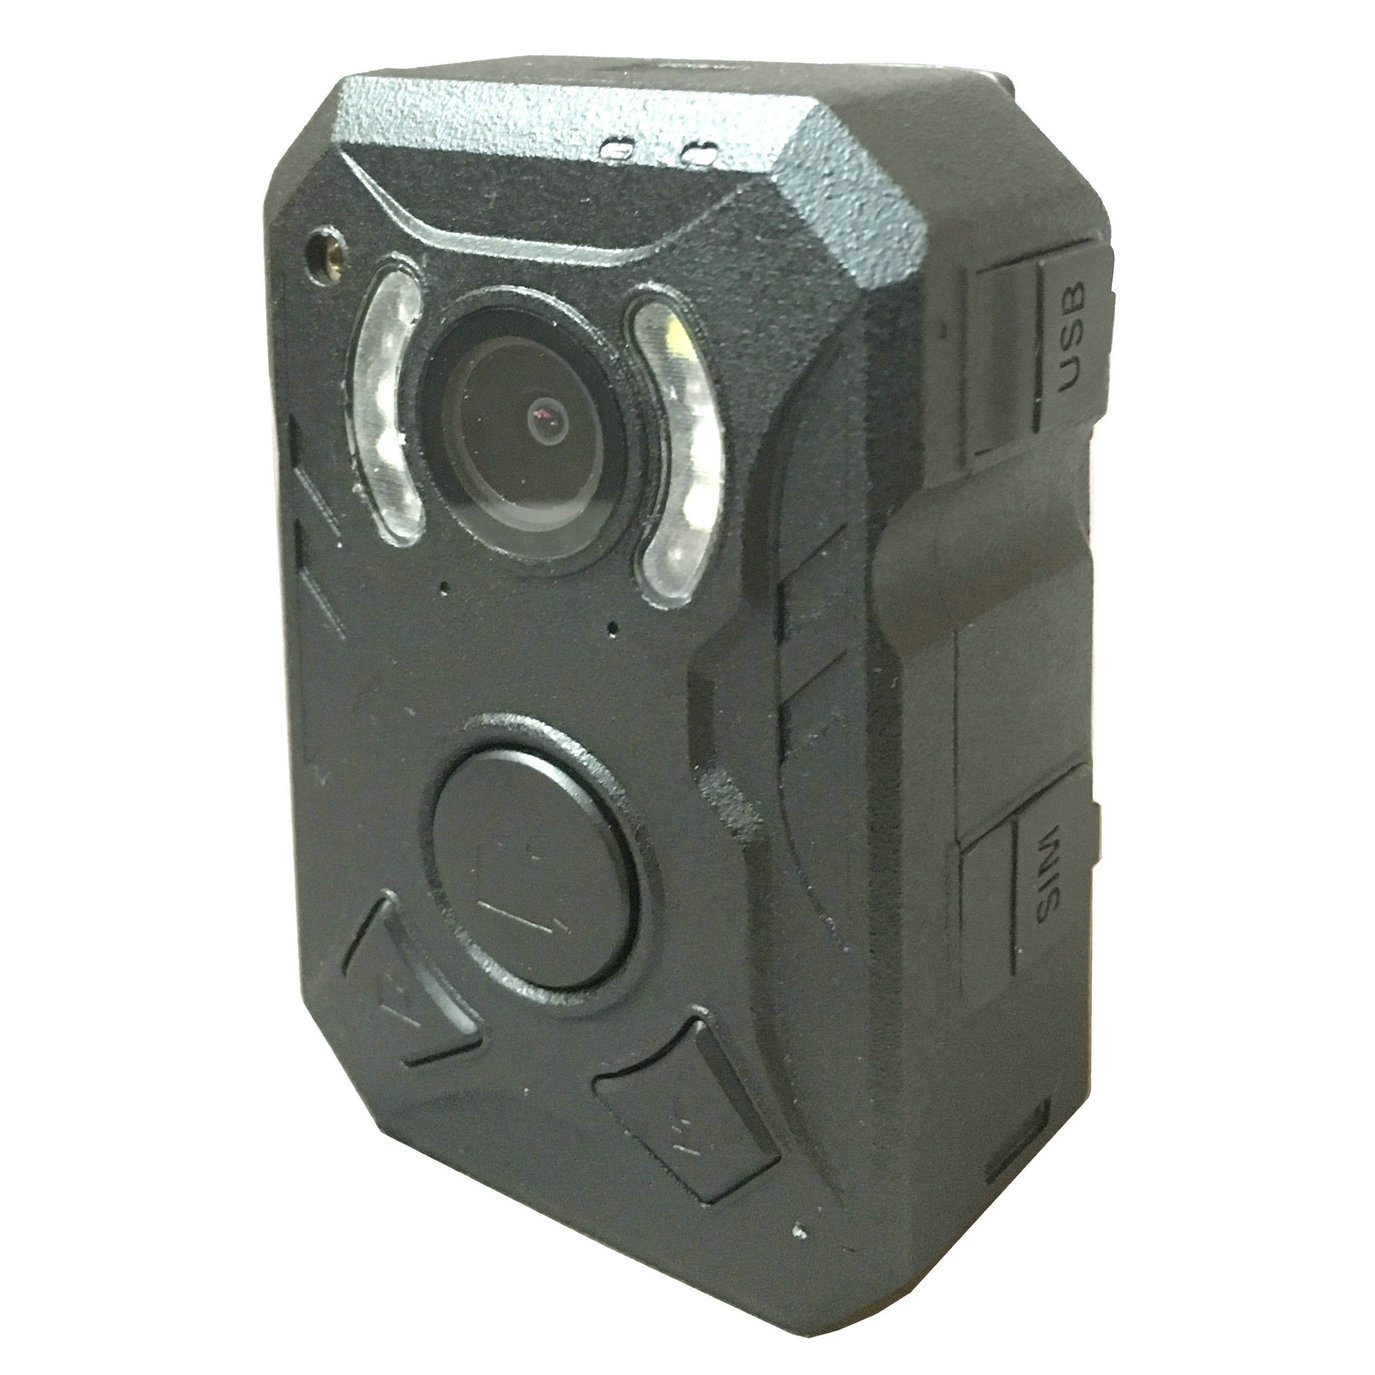 GW-X08 Law Enforcement 4G Body Worn HD Camera